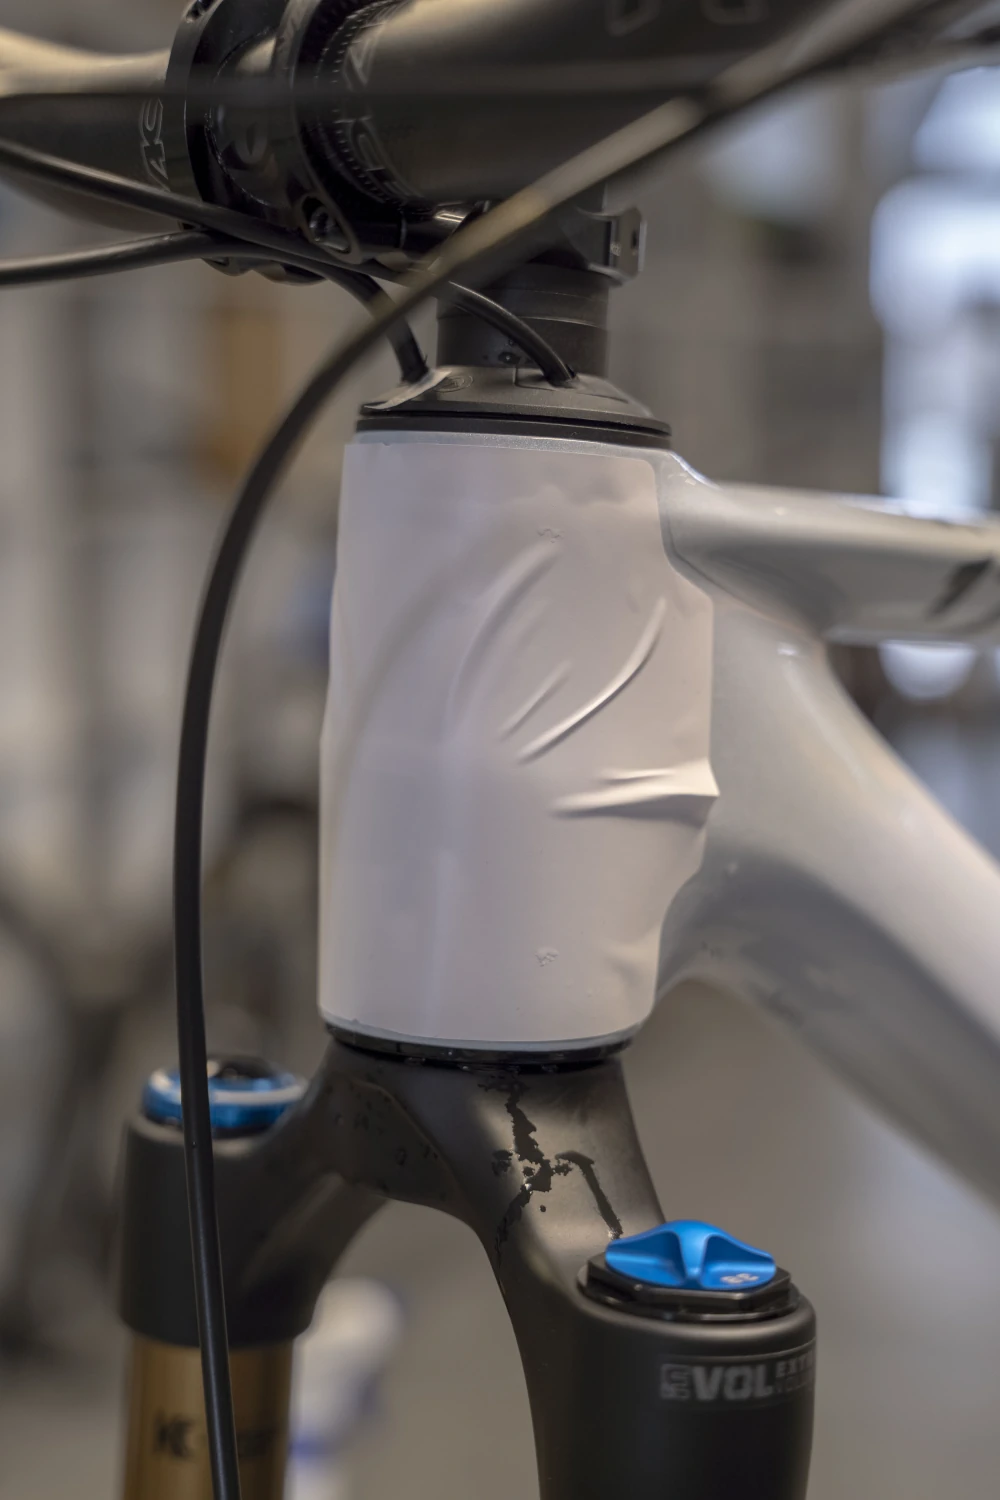 Biały rower MTB, widok na główkę ramy, projektowanie folii ochronnej